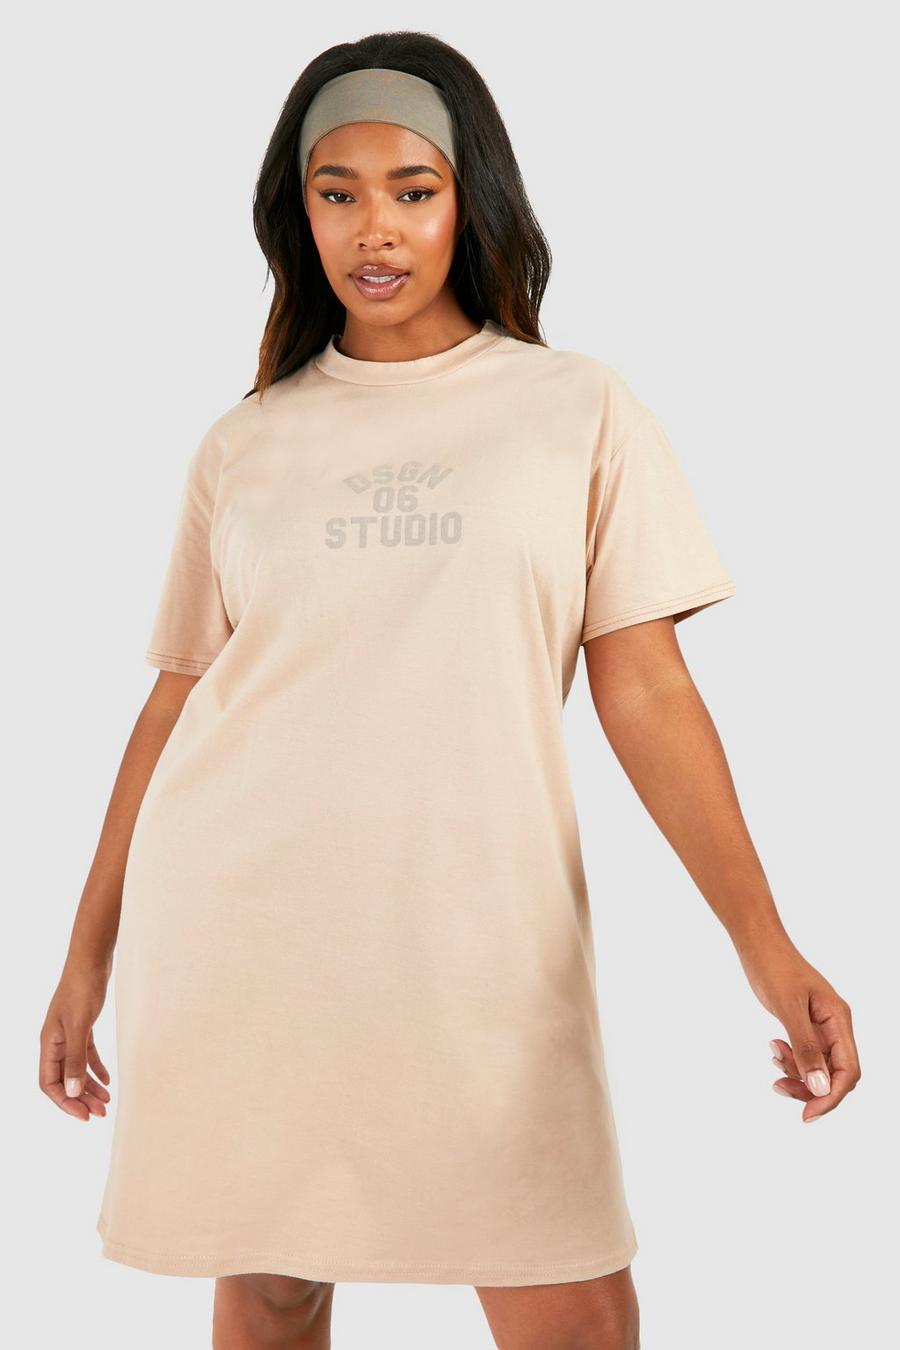 Grande taille - Robe t-shirt à slogan Dsgn Studio, Stone